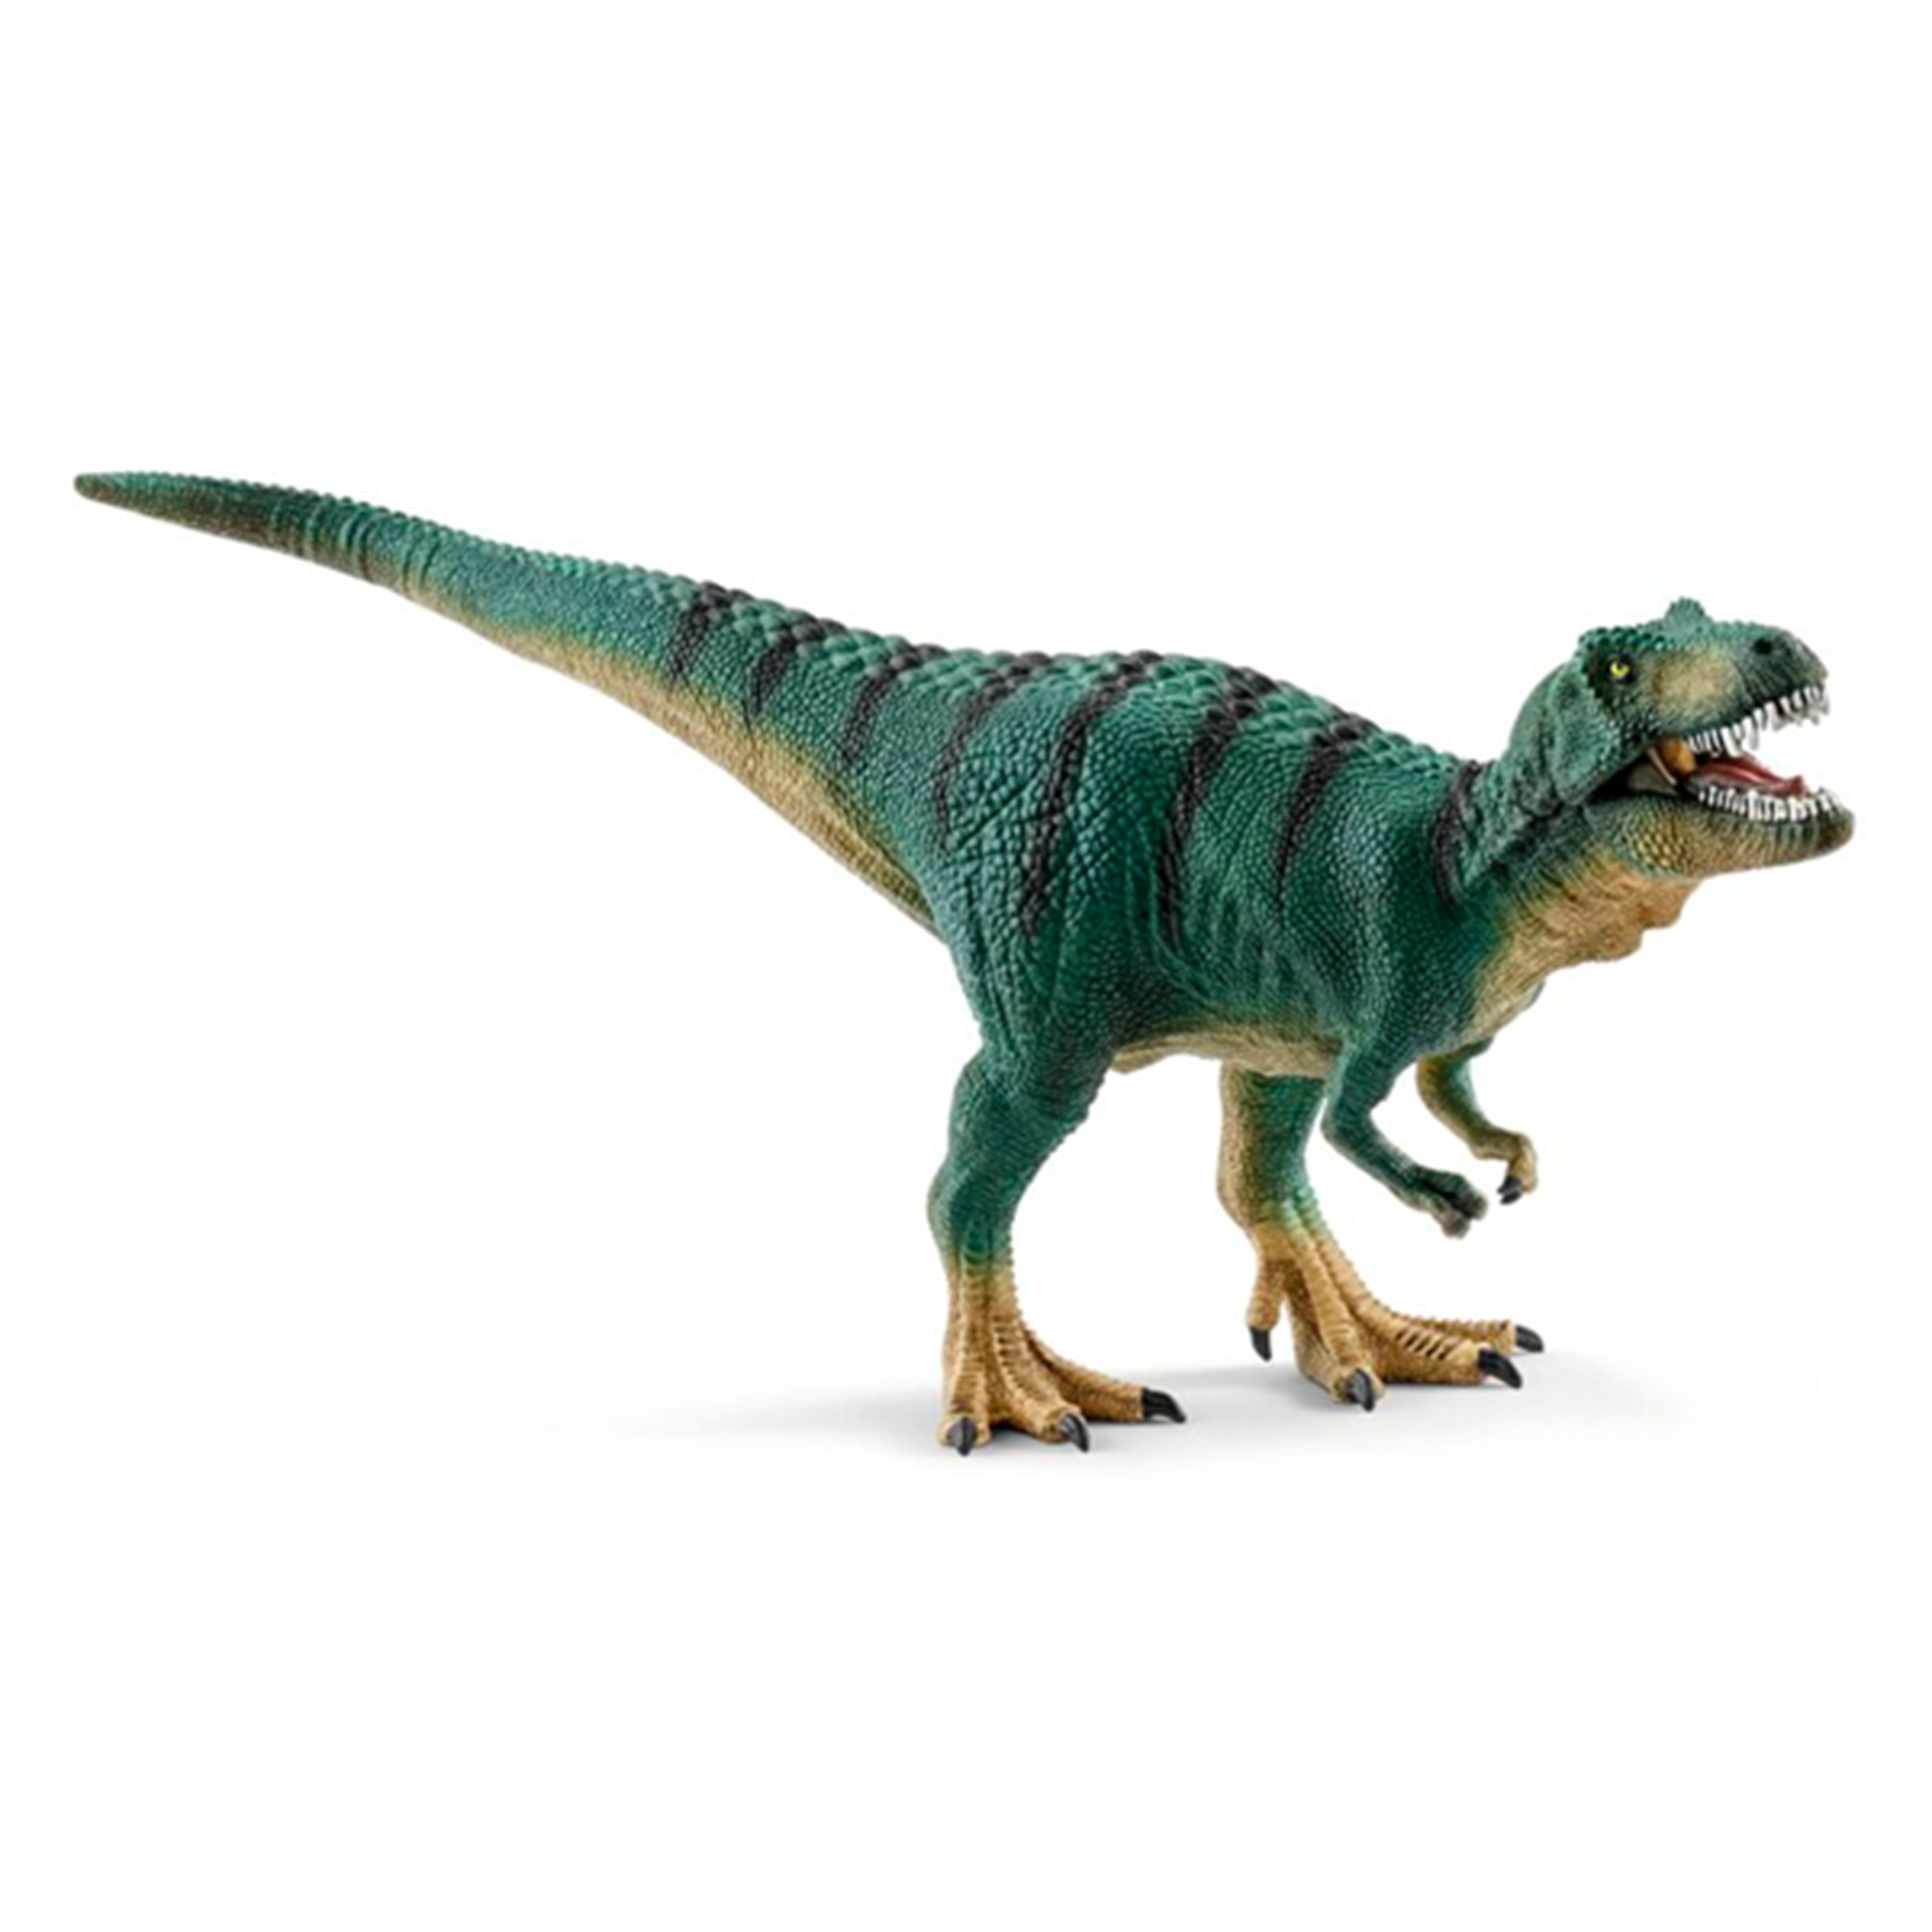 Schleich Dinosaurs Tyrannosaurus Rex Juvenile